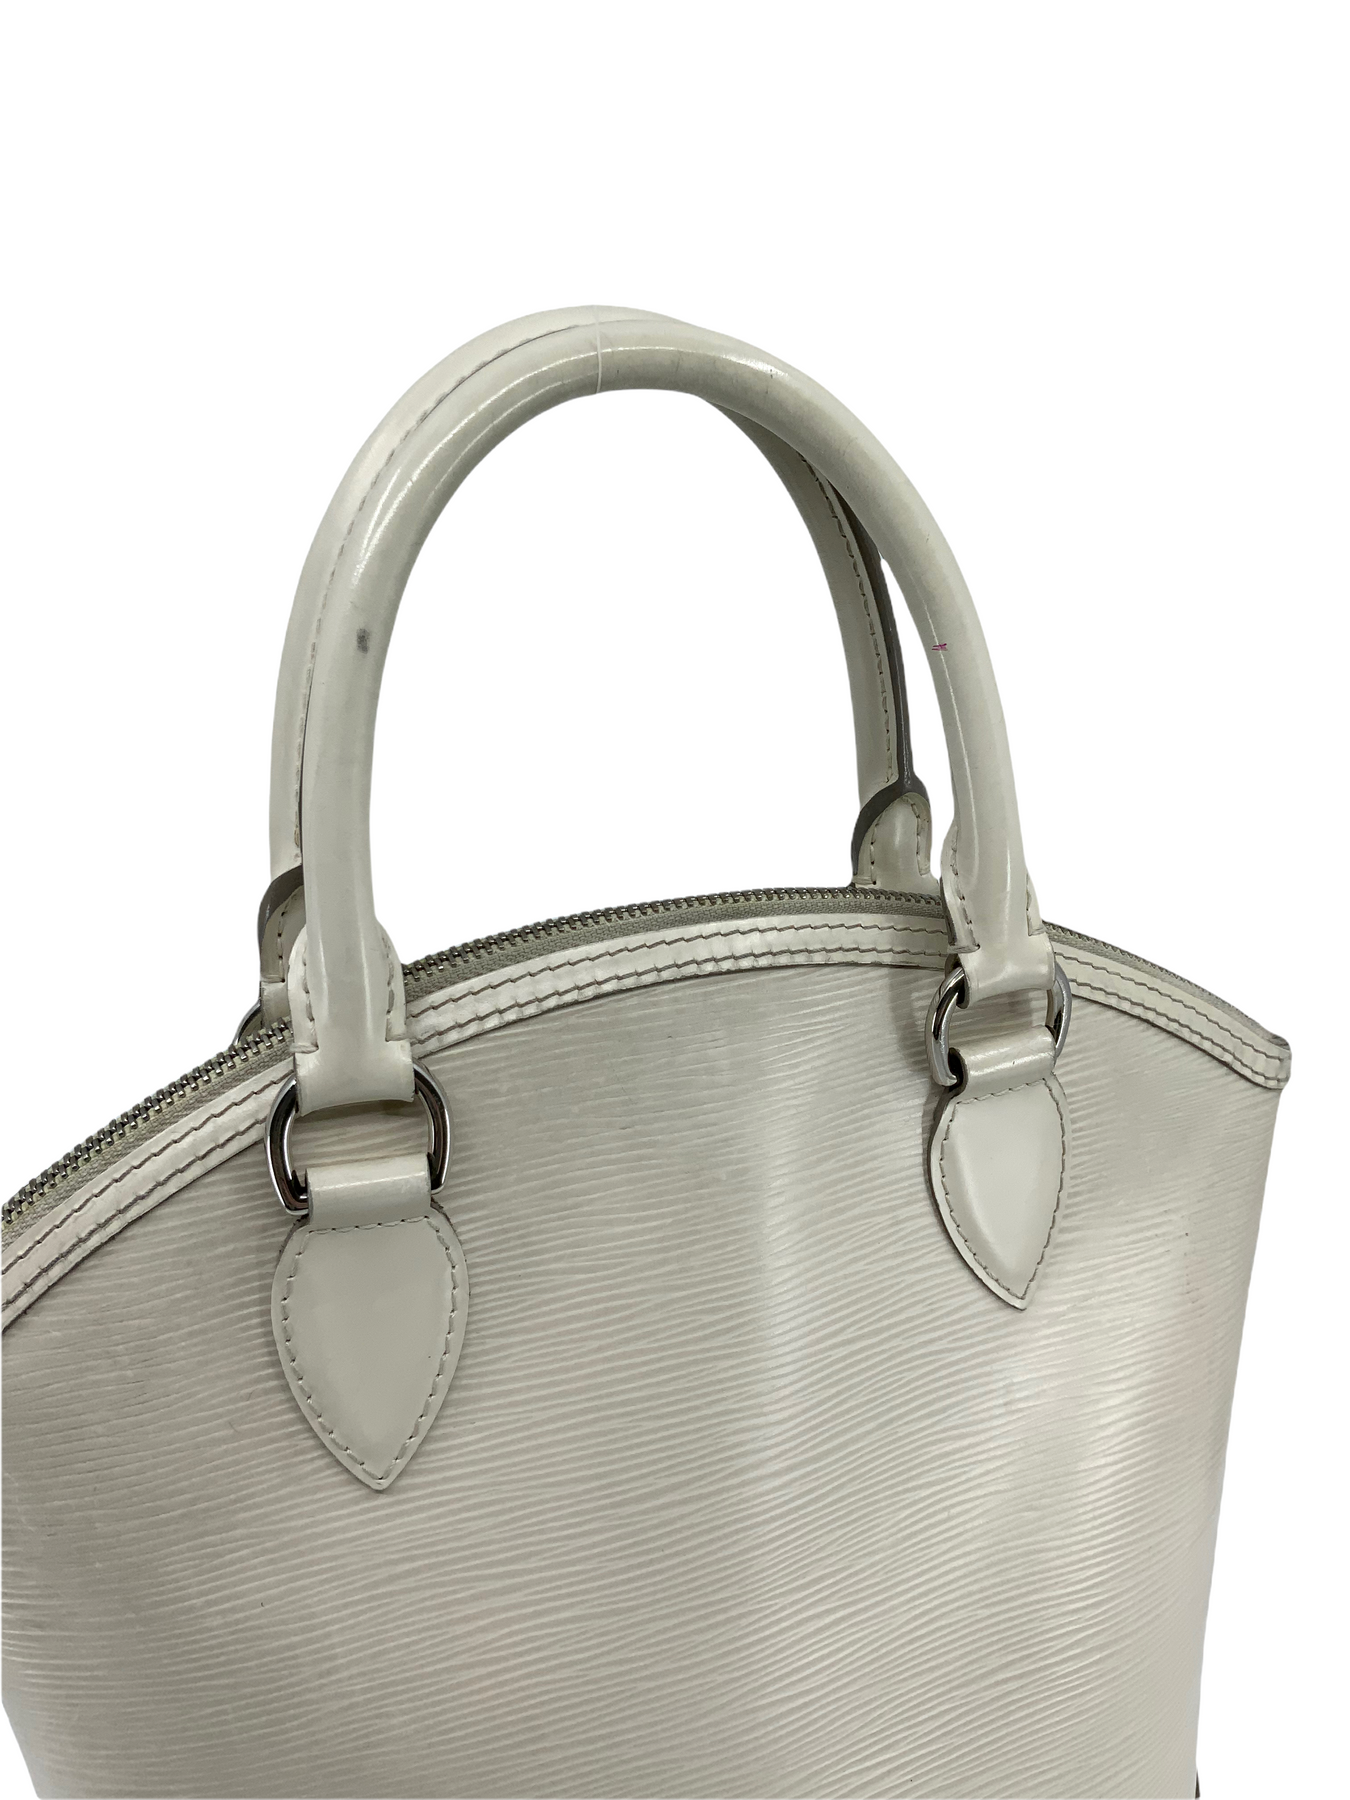 Louis Vuitton Haute Maroquinerie Lockit Handbag Leather PM